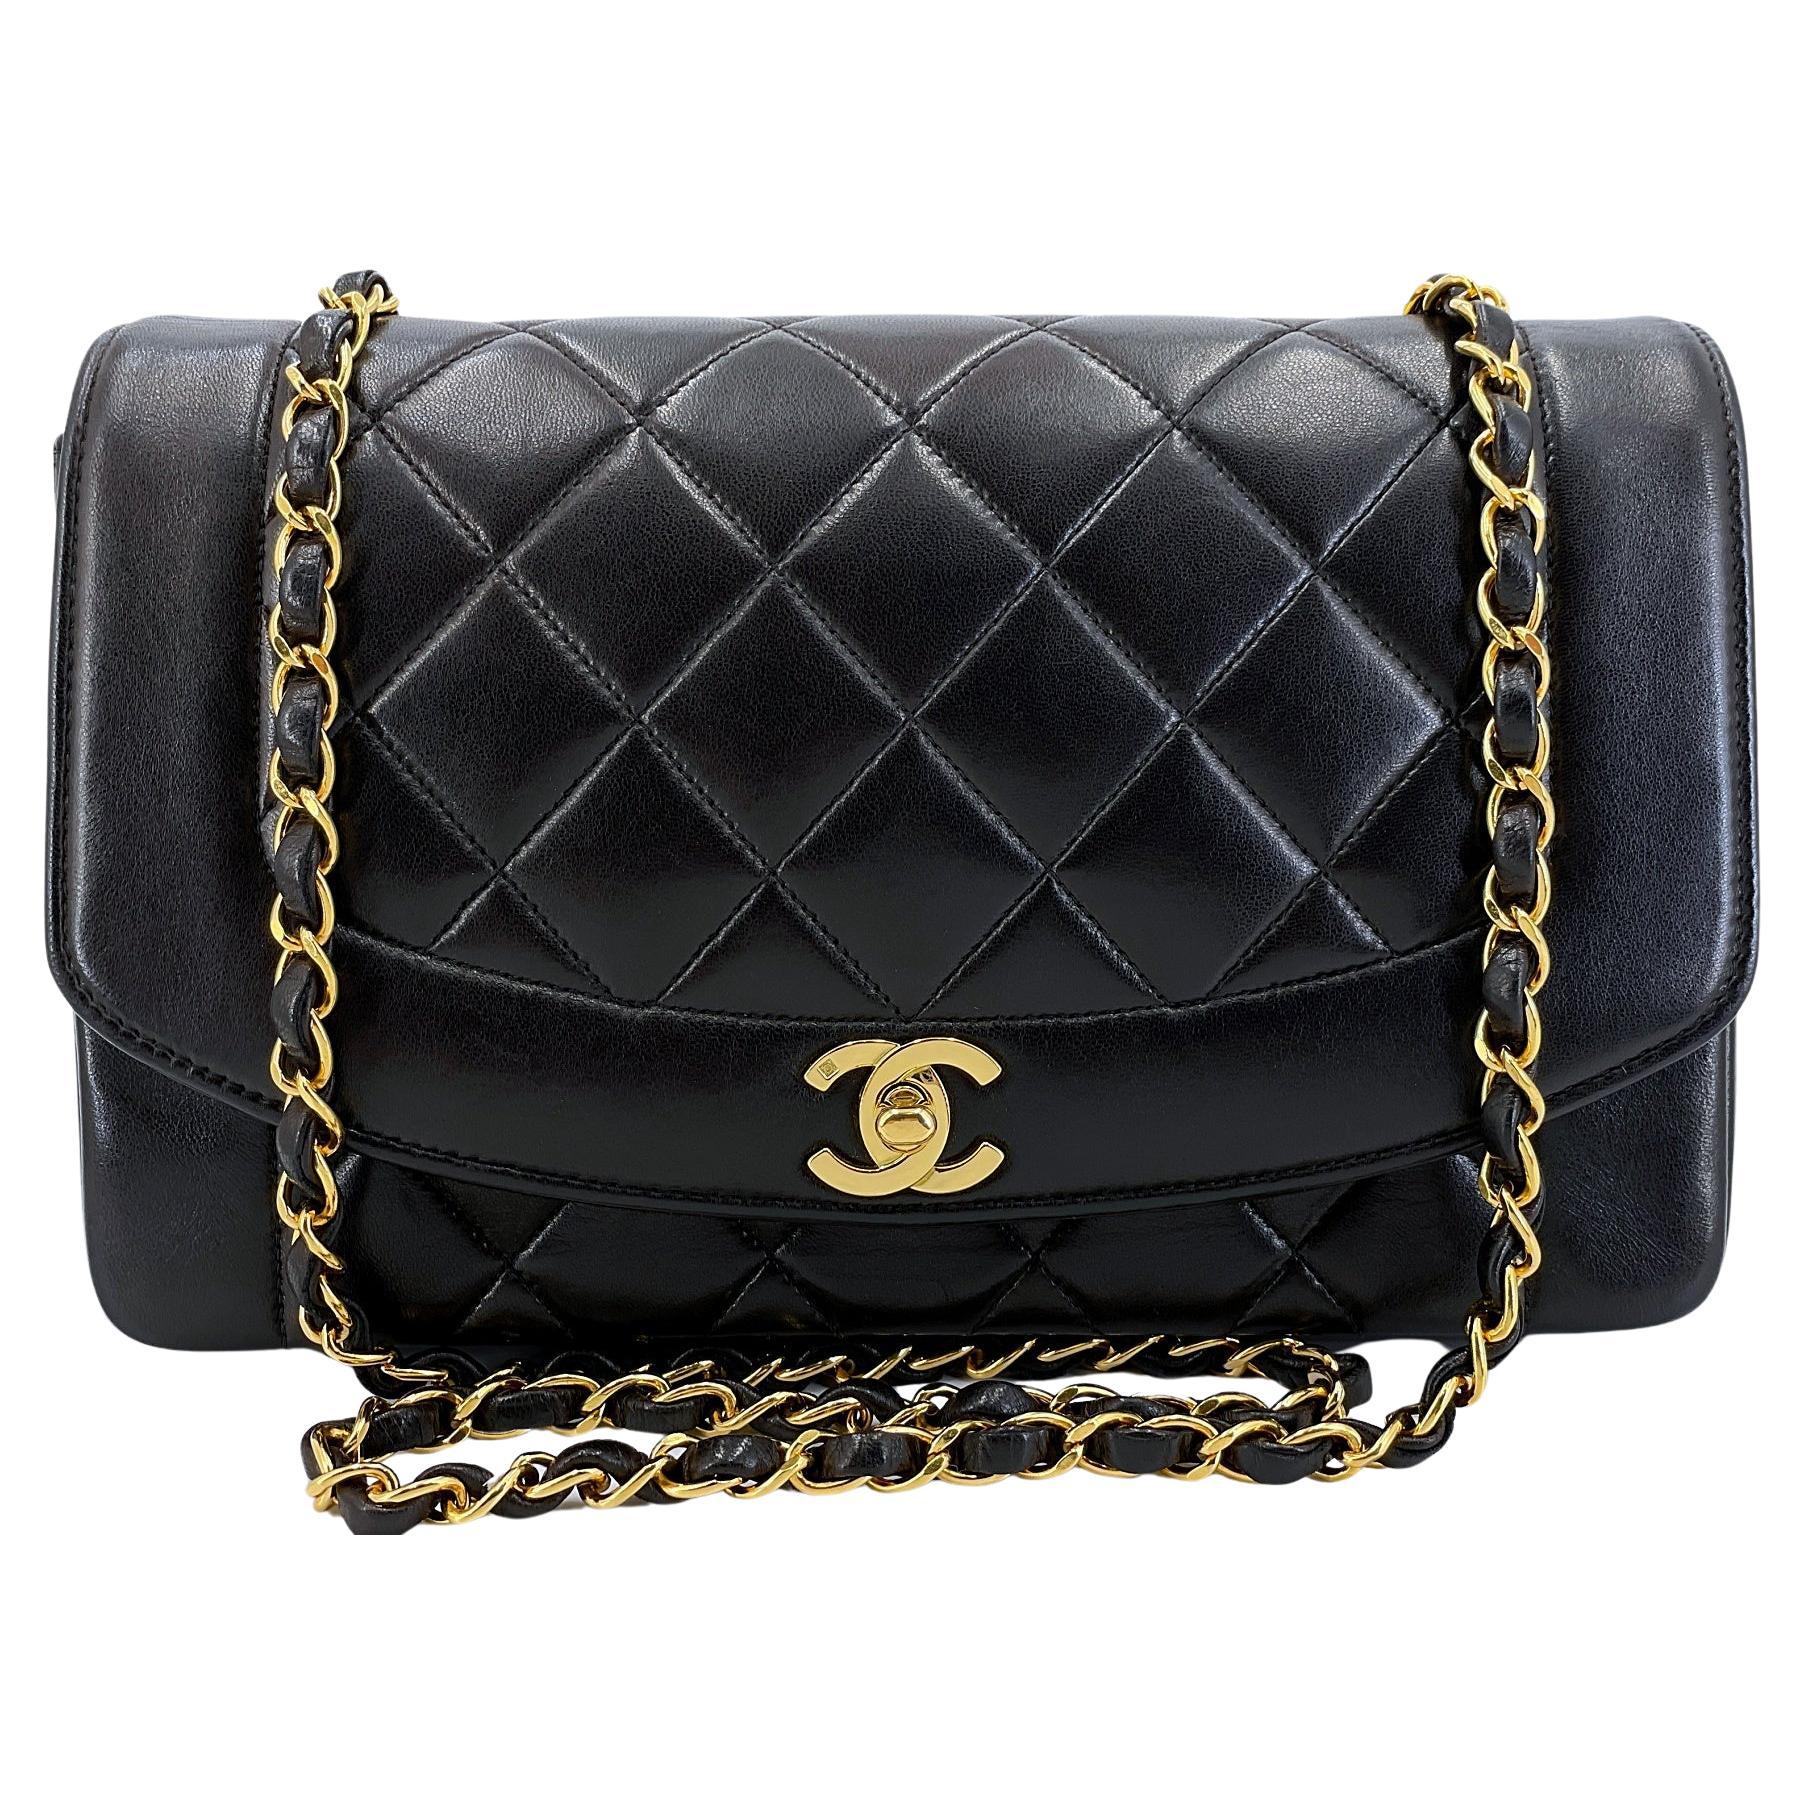 Chanel 1994 Vintage Black Lambskin Medium Diana Flap Bag 24k GHW 64411 For Sale